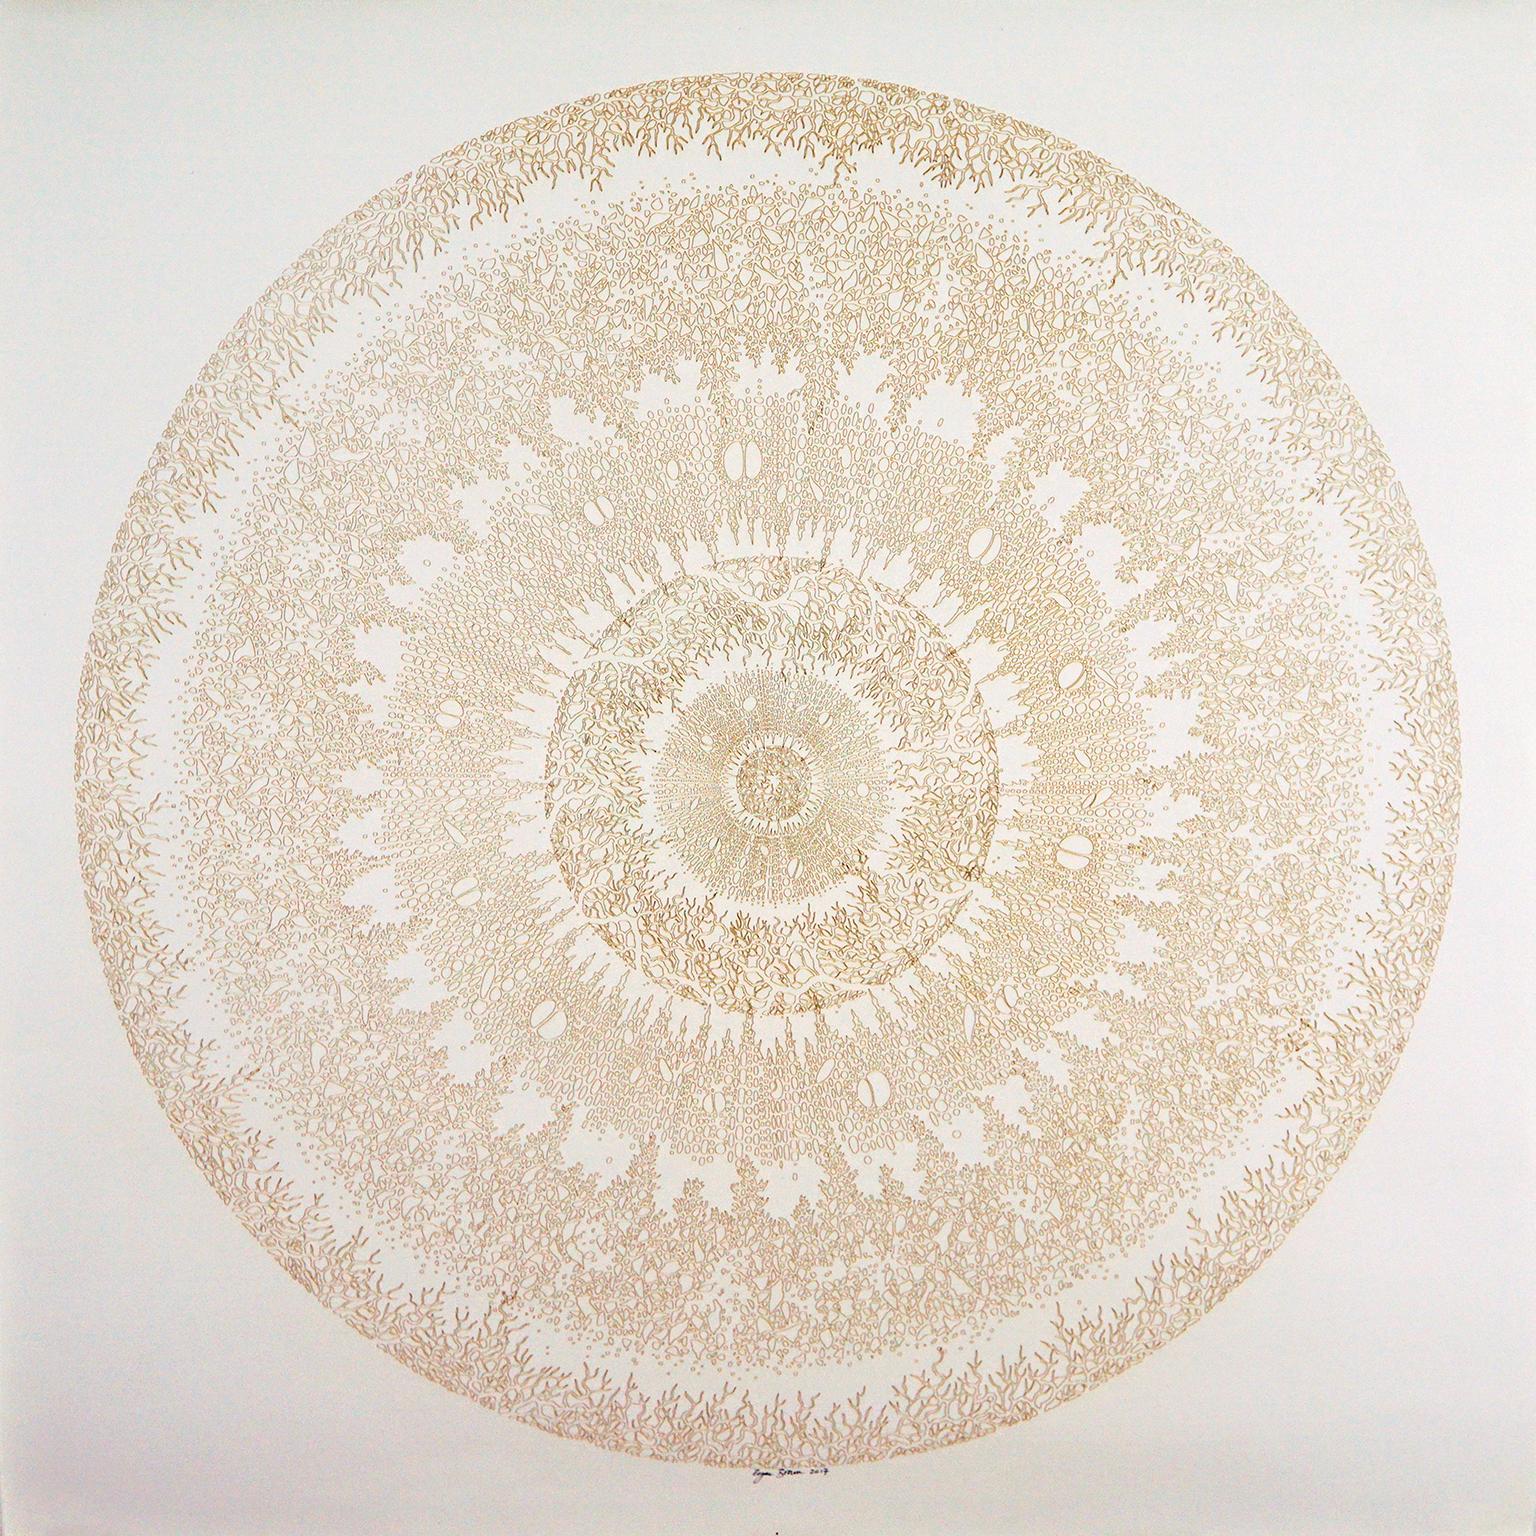 Rogan Brown Abstract Painting - Mandala Variations - Gold 1